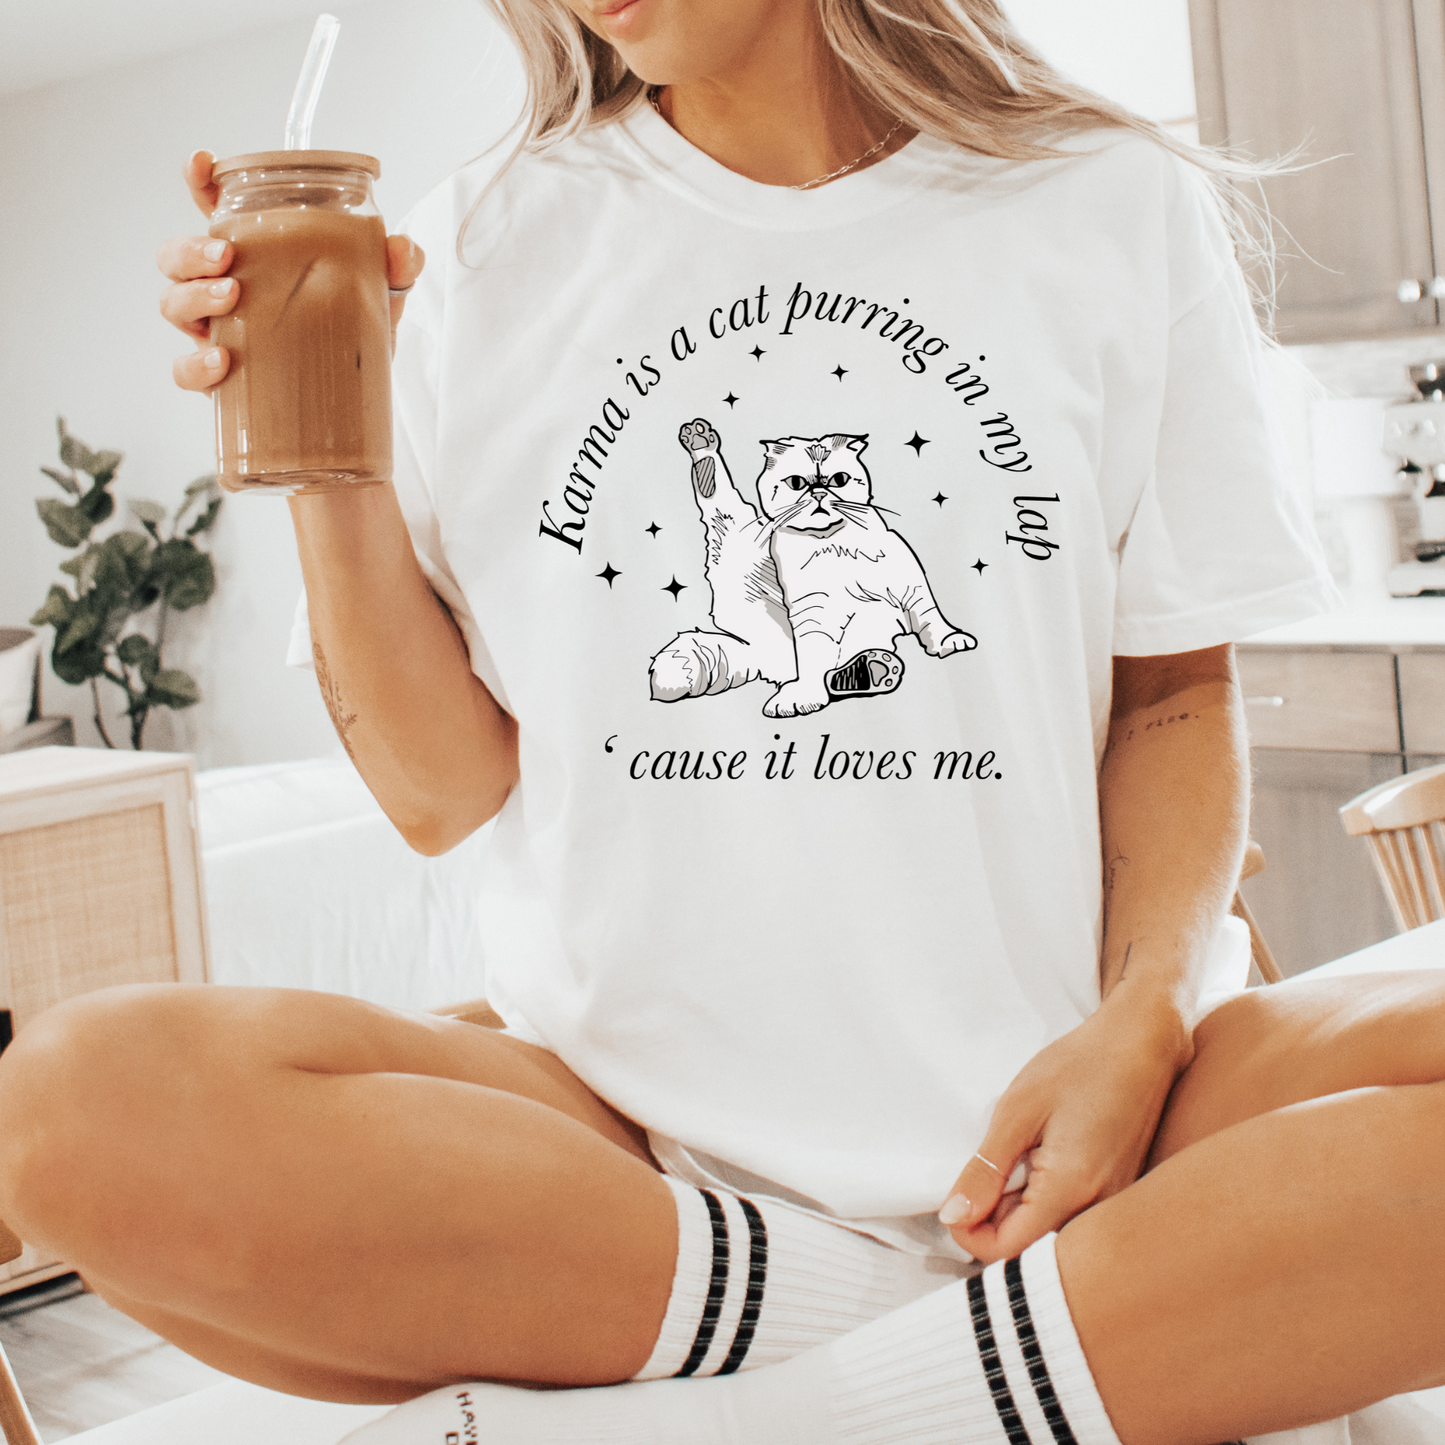 T Swift inspired t-shirt | Eras t-shirt | Karma is a cat | Adult t-shirt |